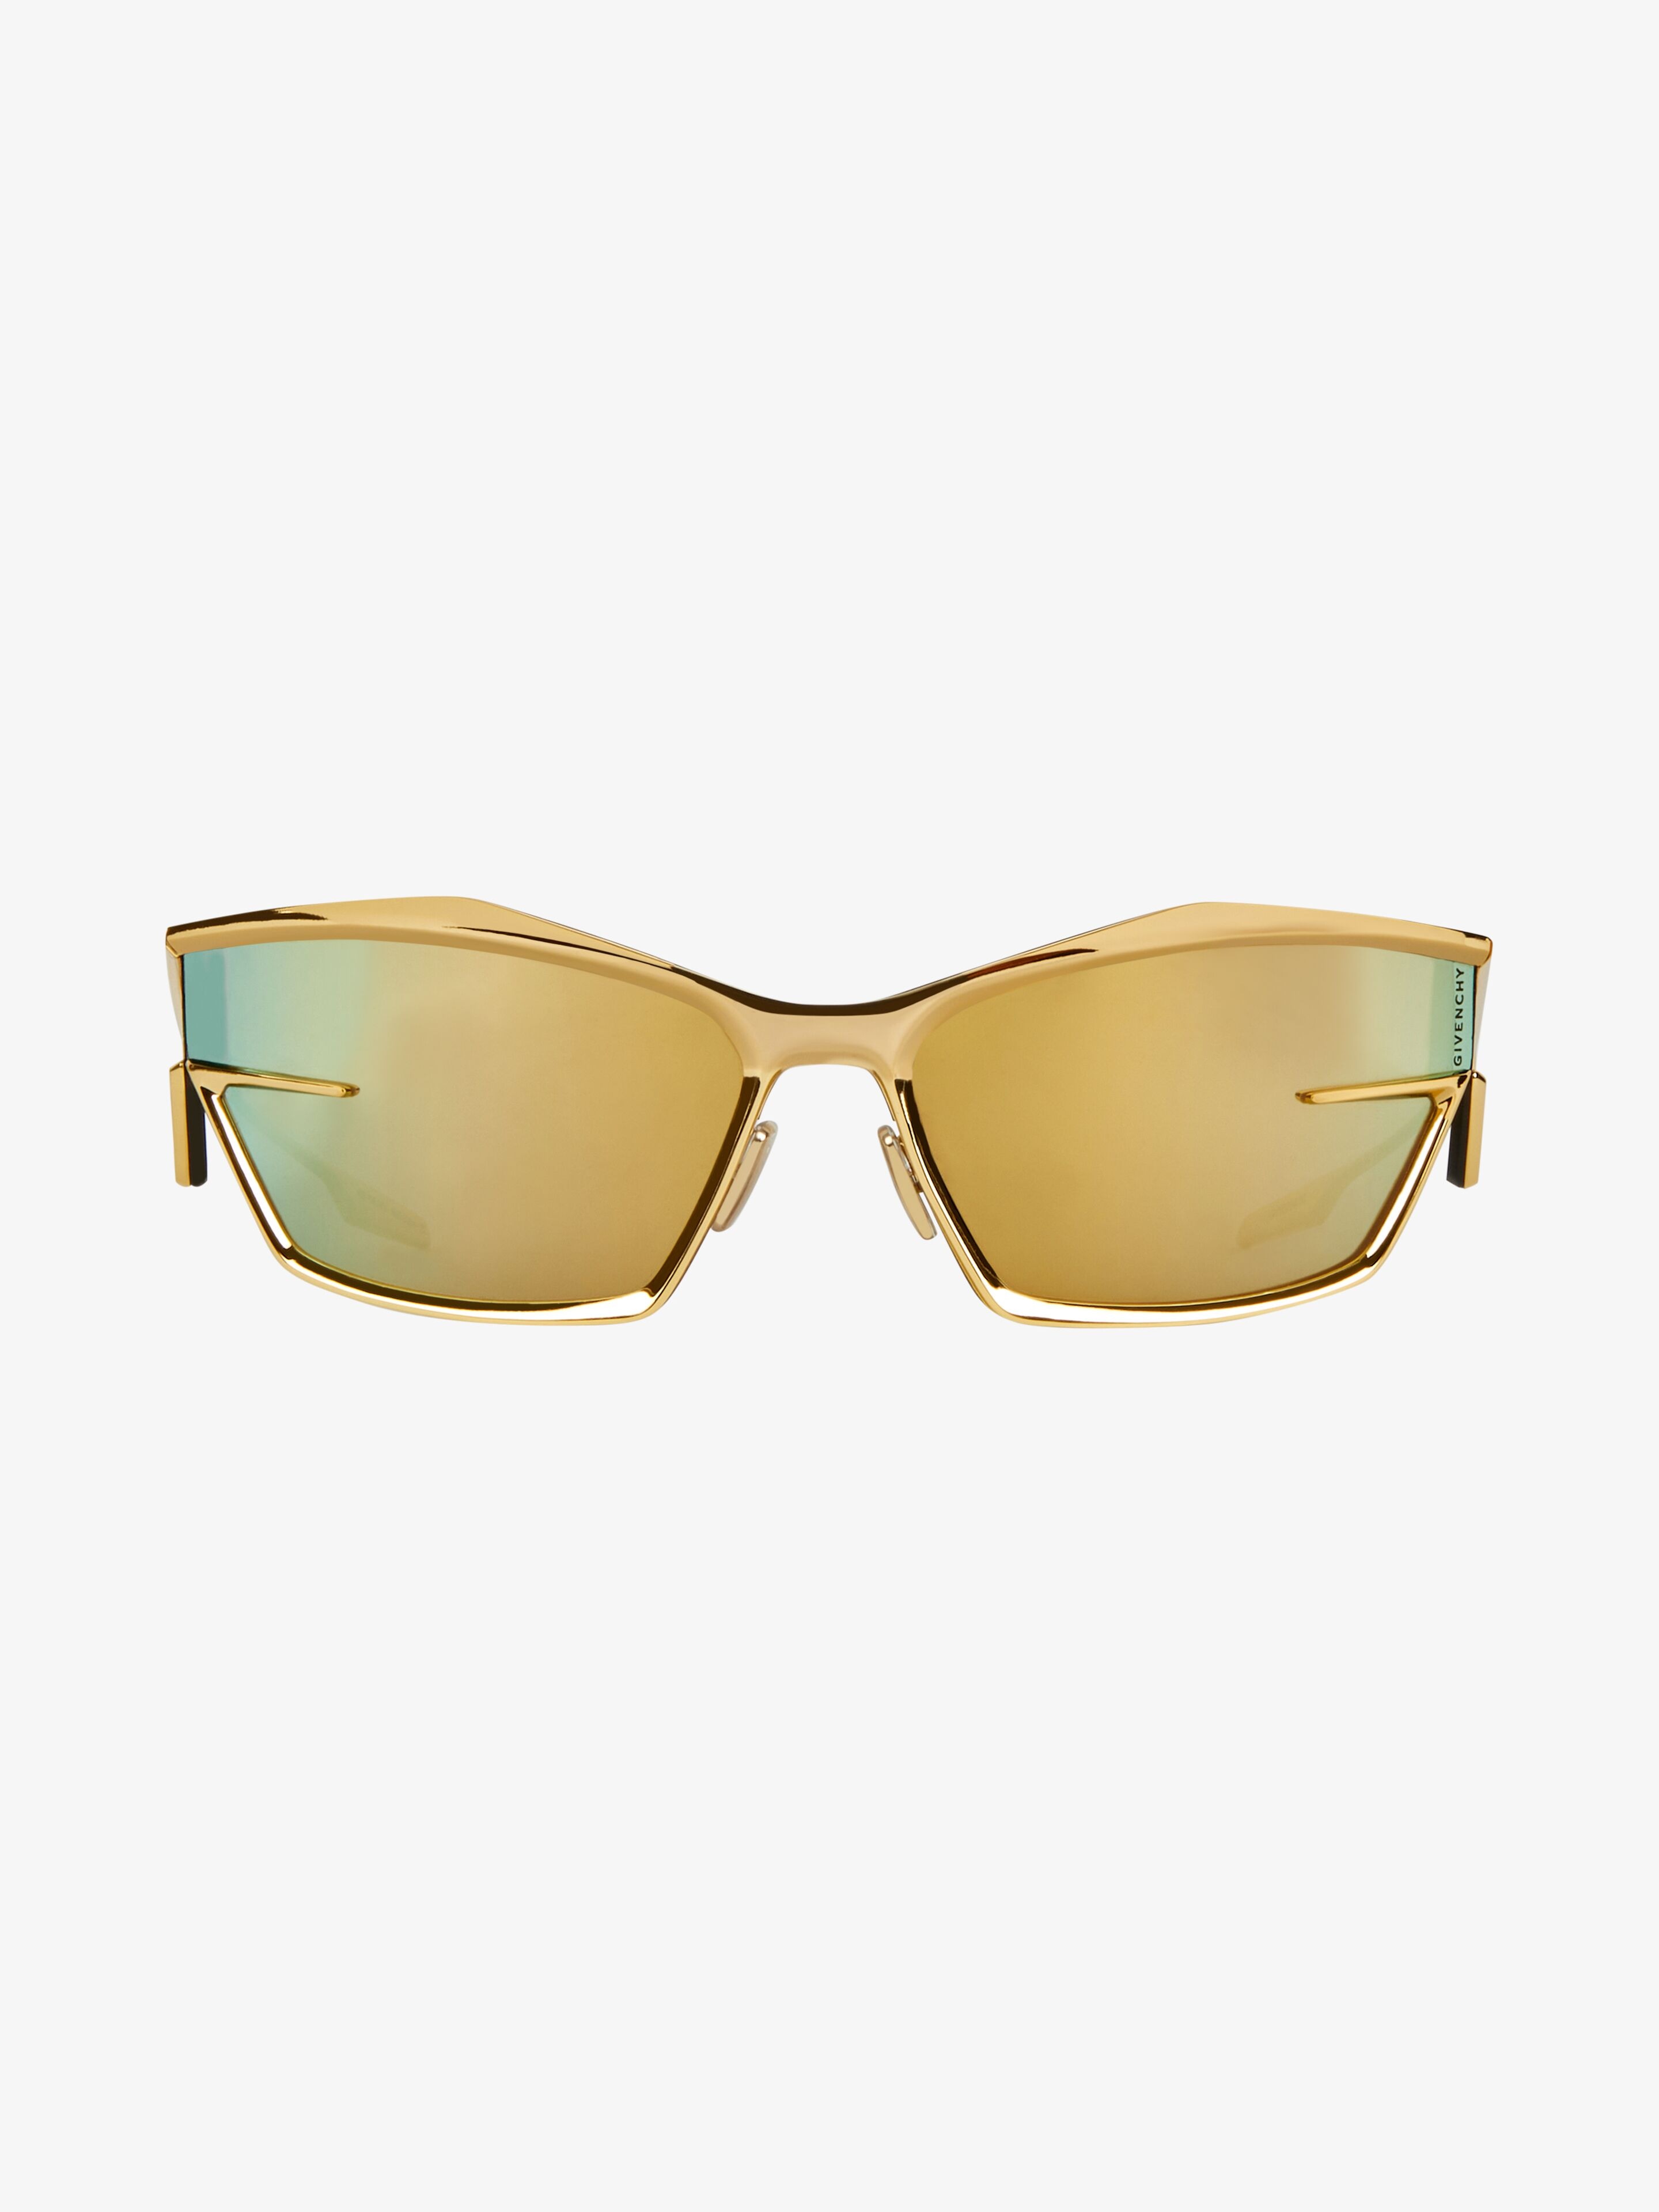 Givenchy Women's GV Day 52mm Lector Wayfarer Sunglasses | Dillard's